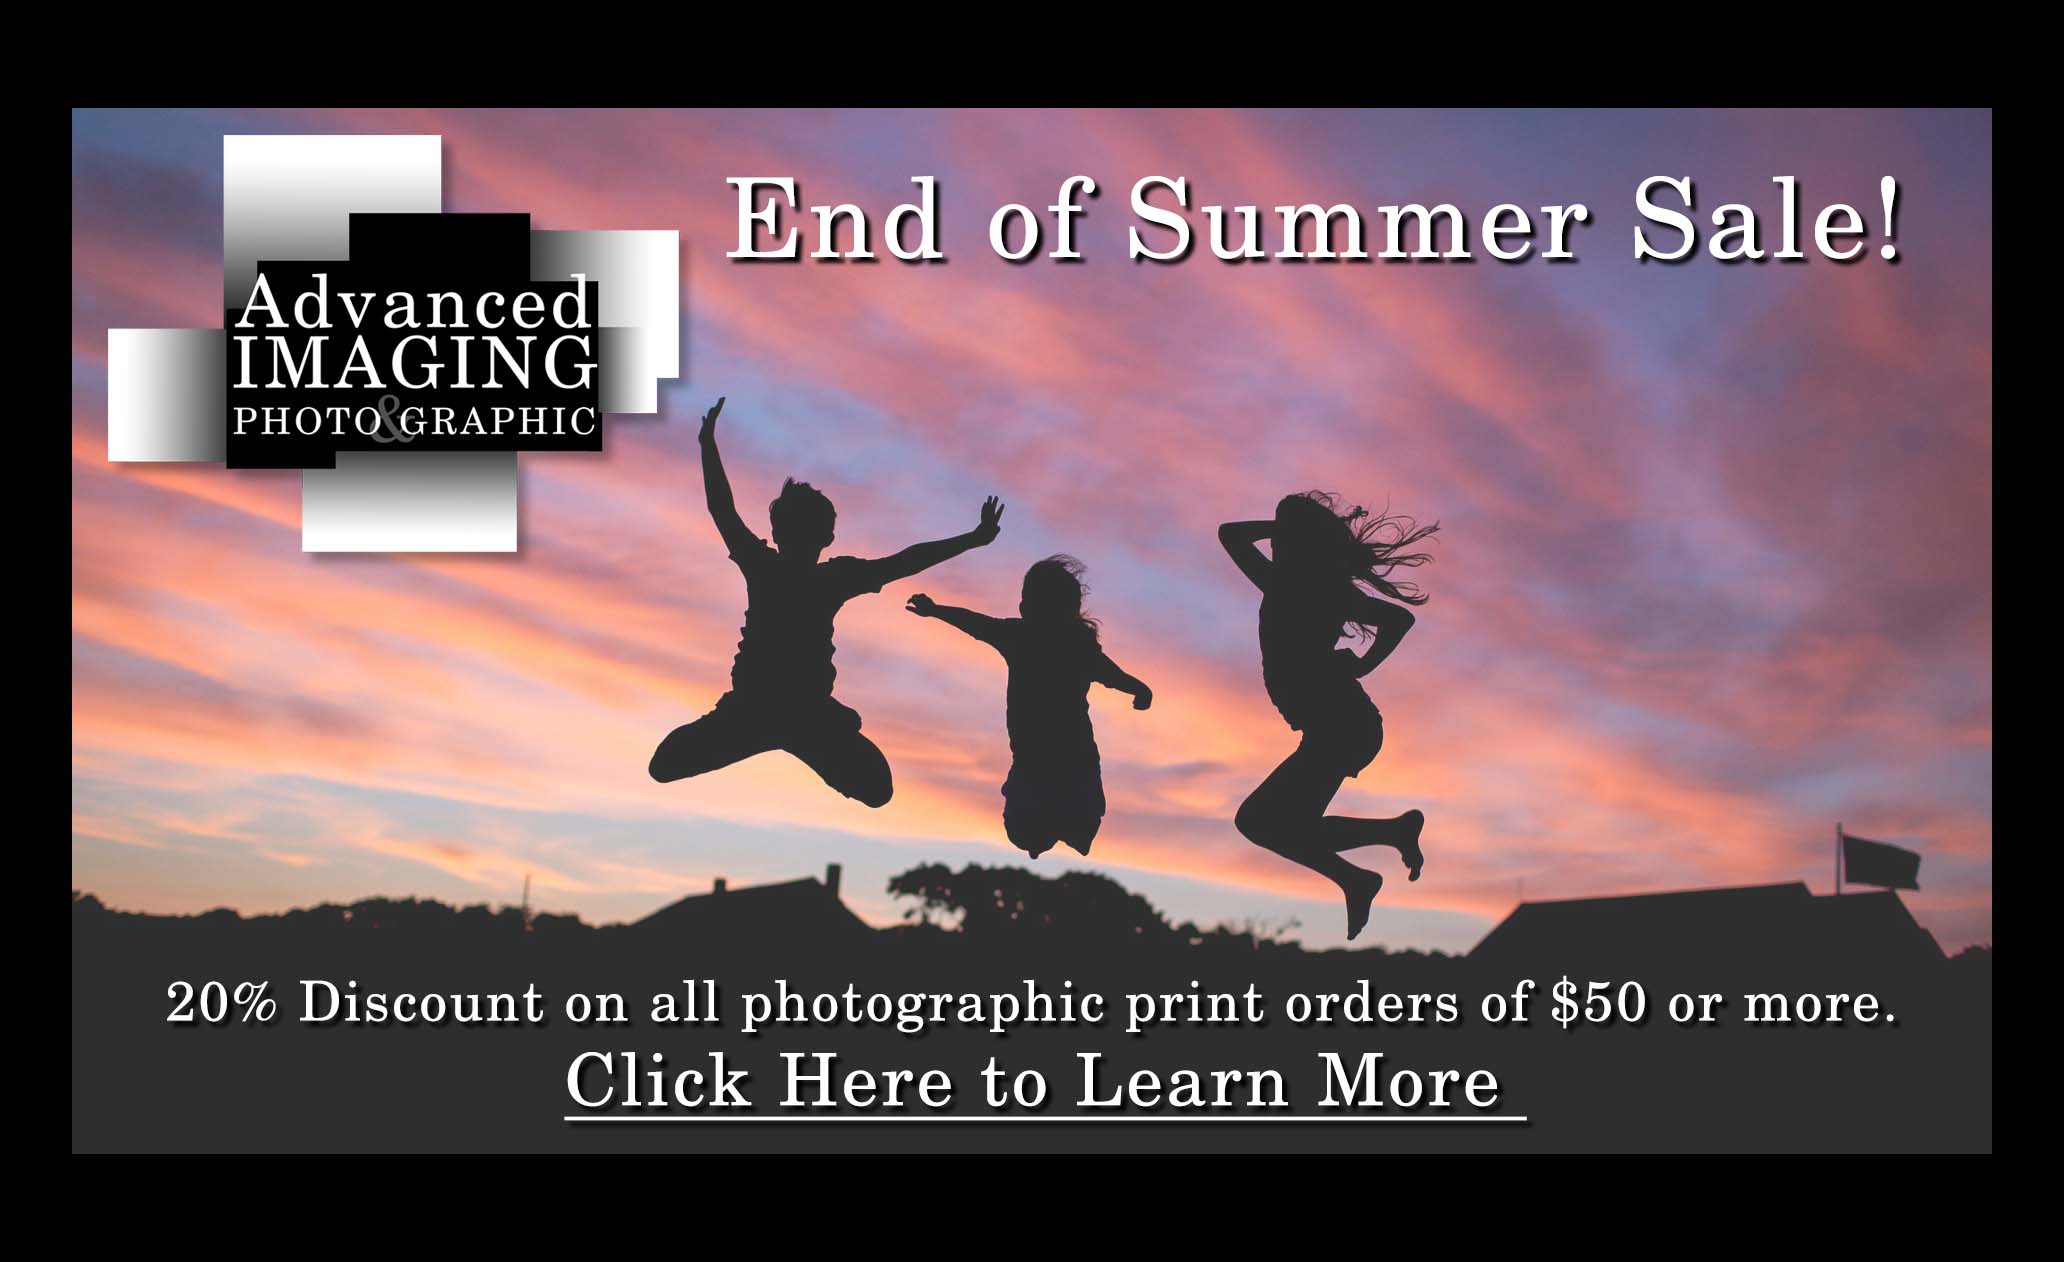 End of summer sale banner